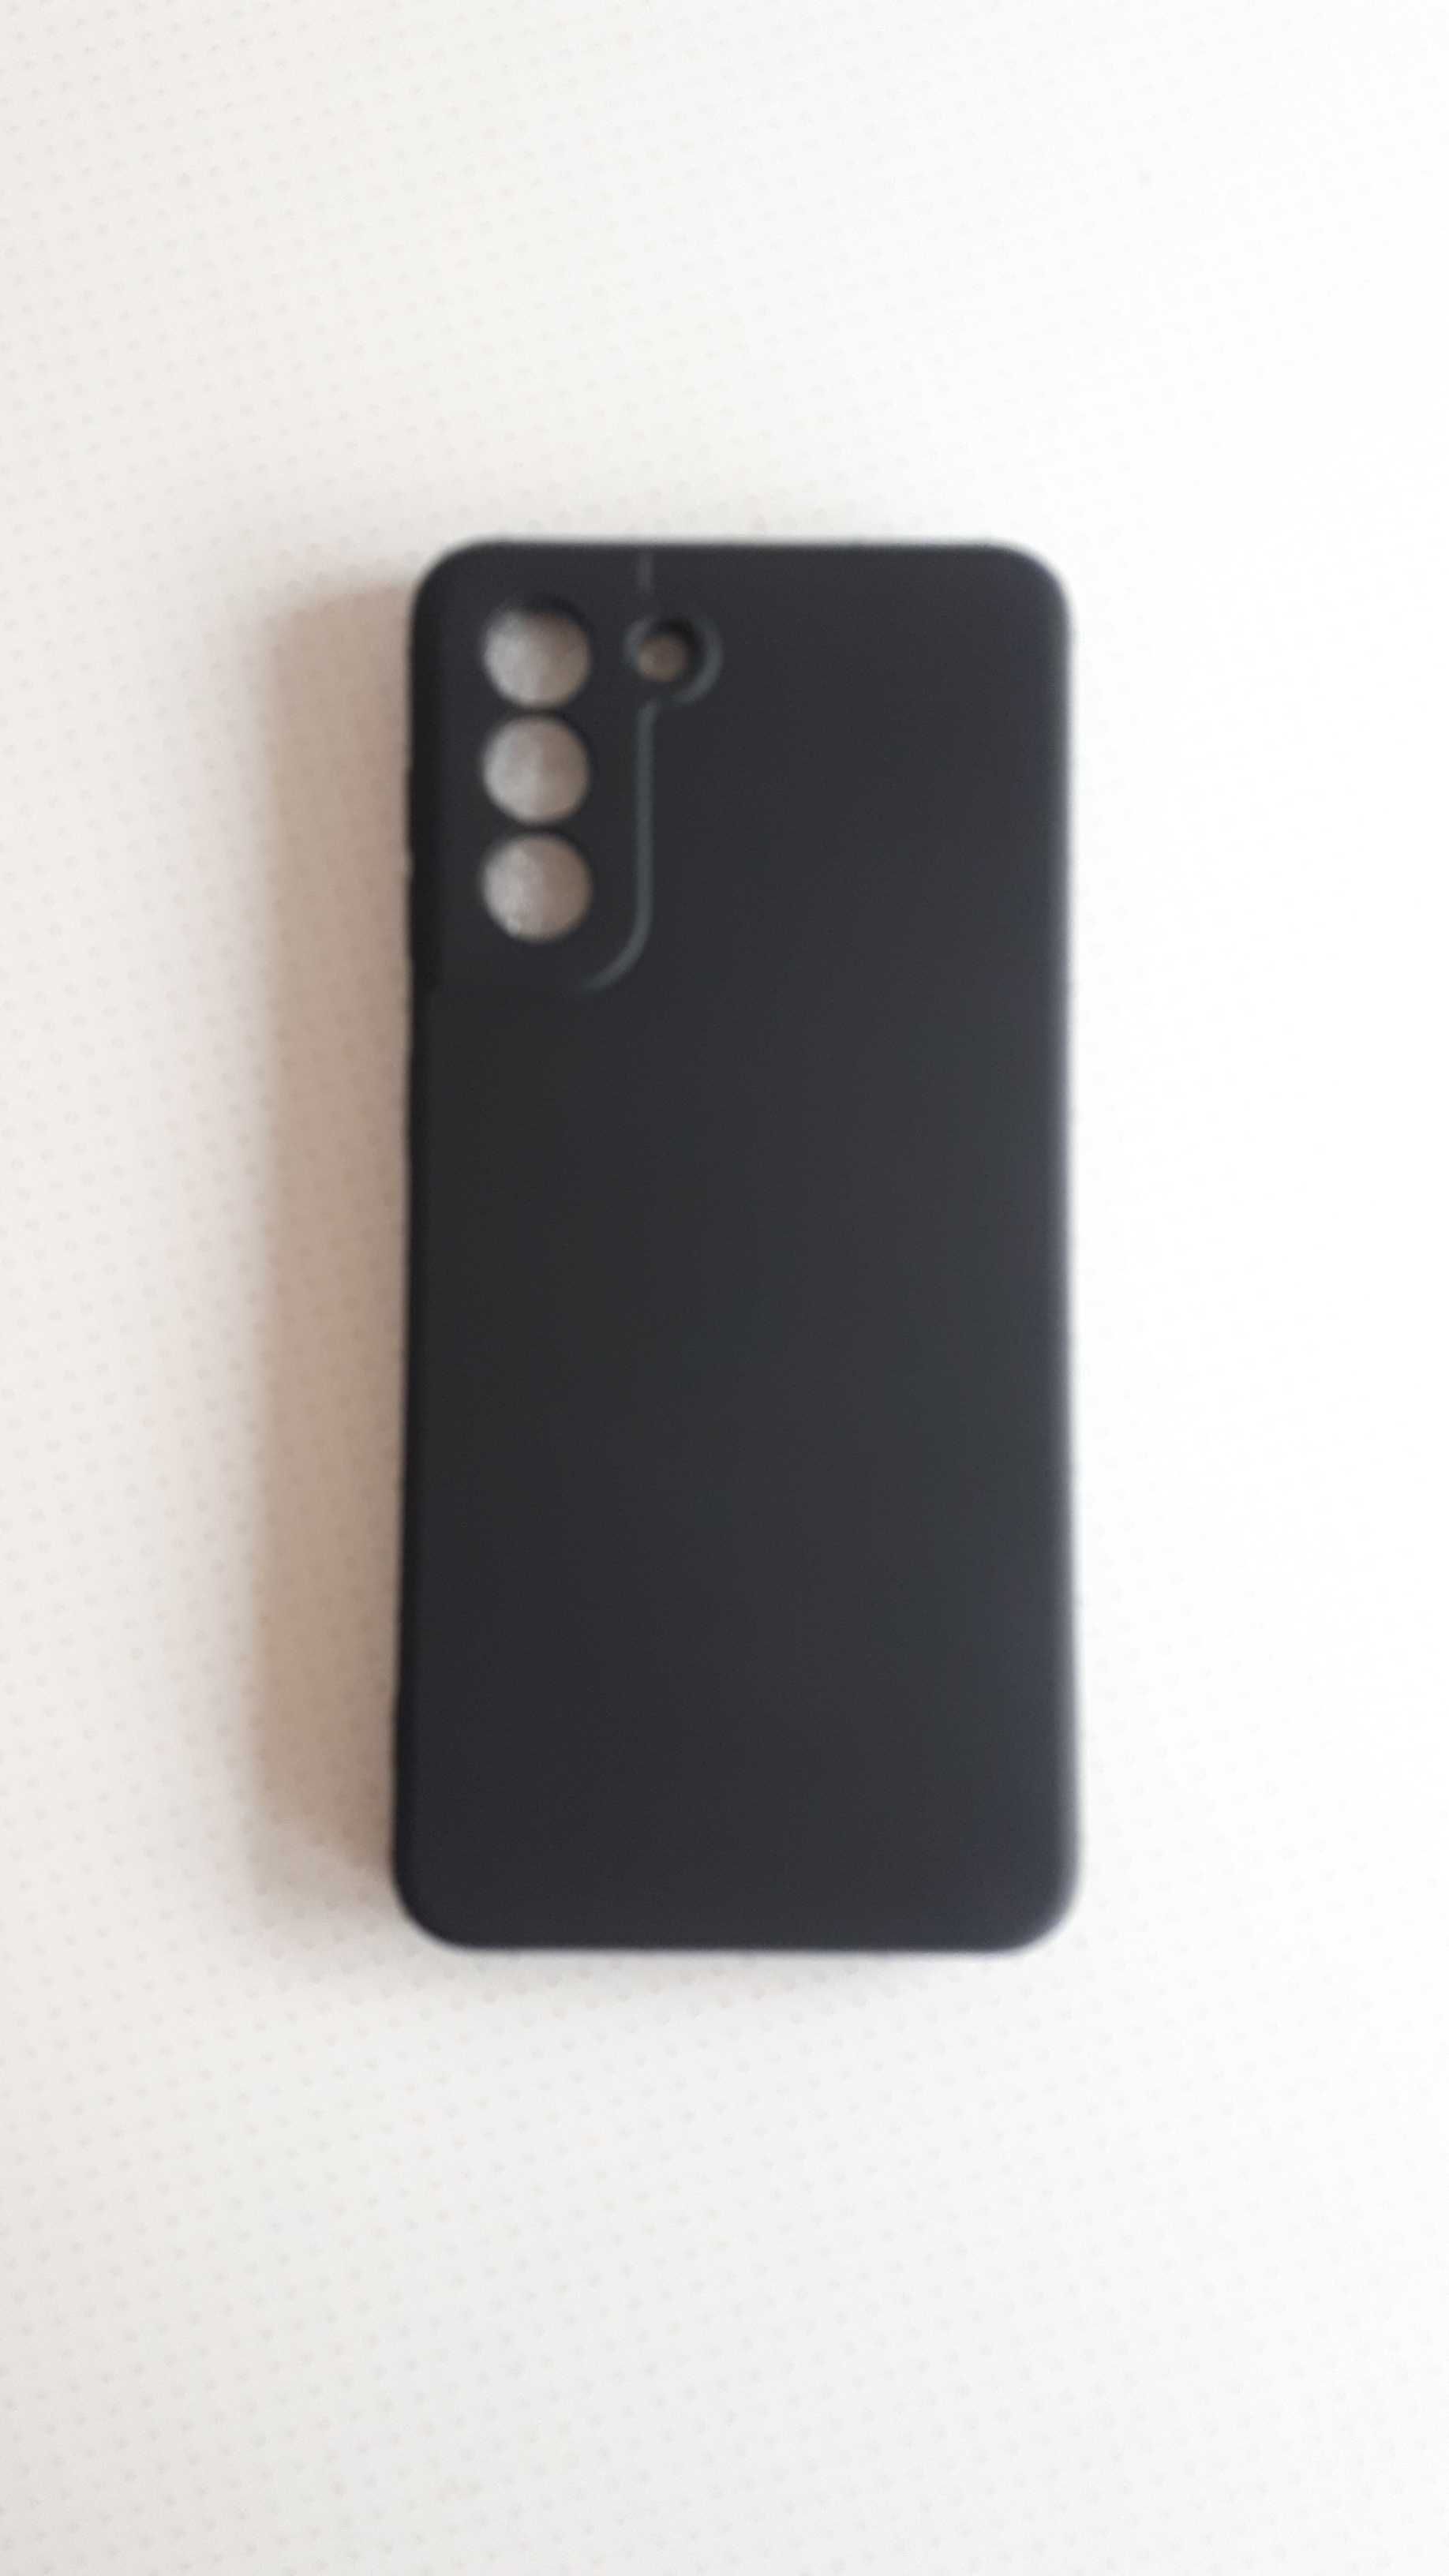 Capa em silicone para telemóvel  modelo Samsung Galaxy S21 NOVA